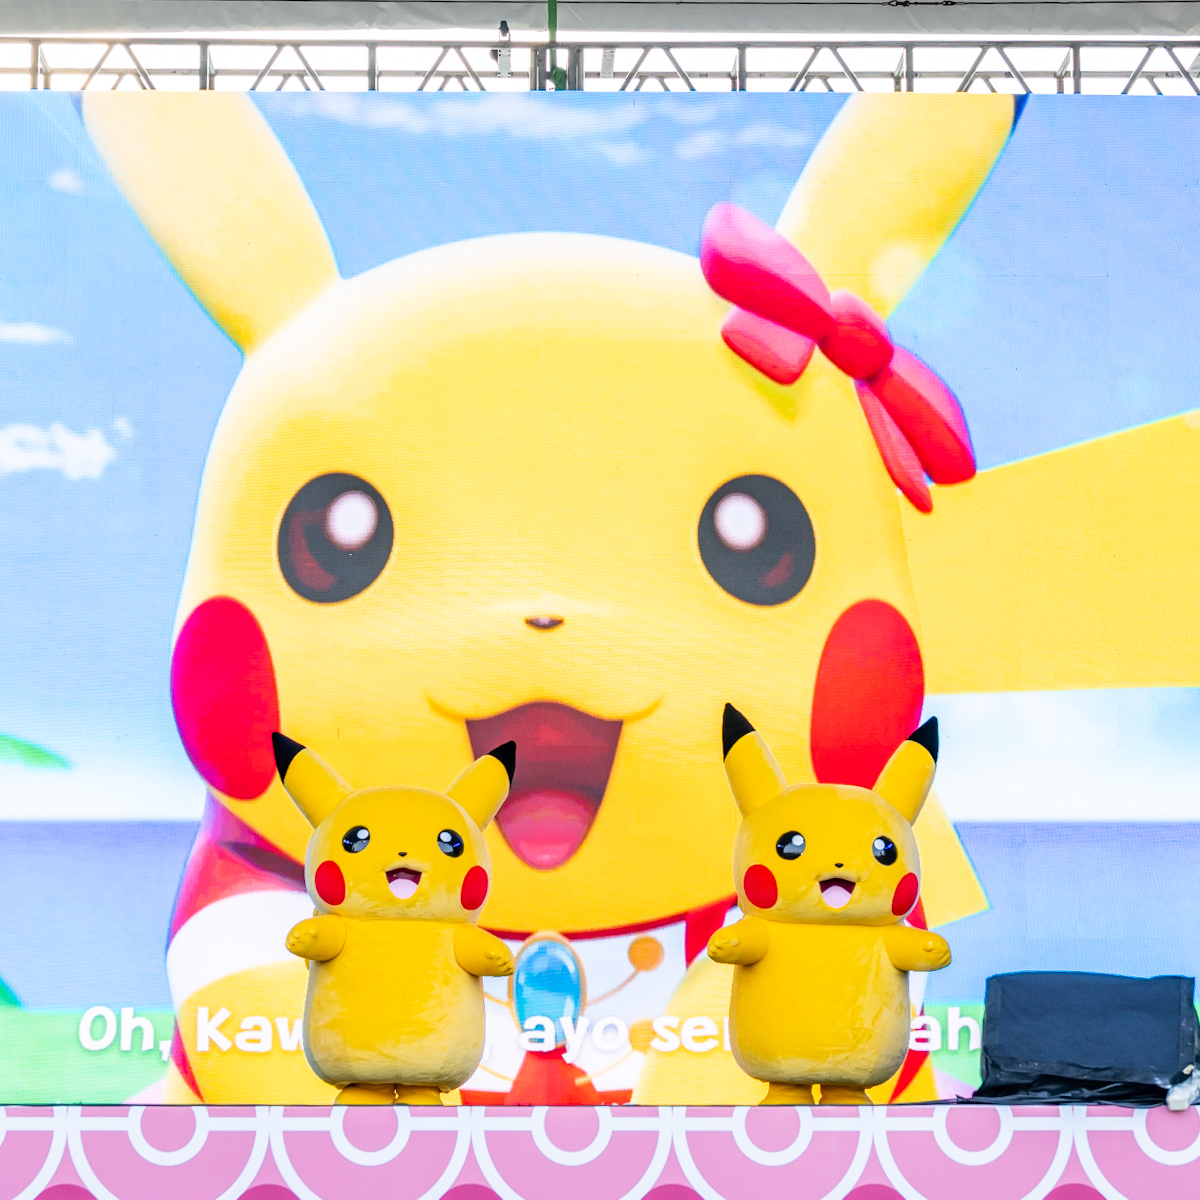 ポケモン『Pikachu’s Indonesia Journey』Let's Dance Together Pokémon Kids TV Songs5